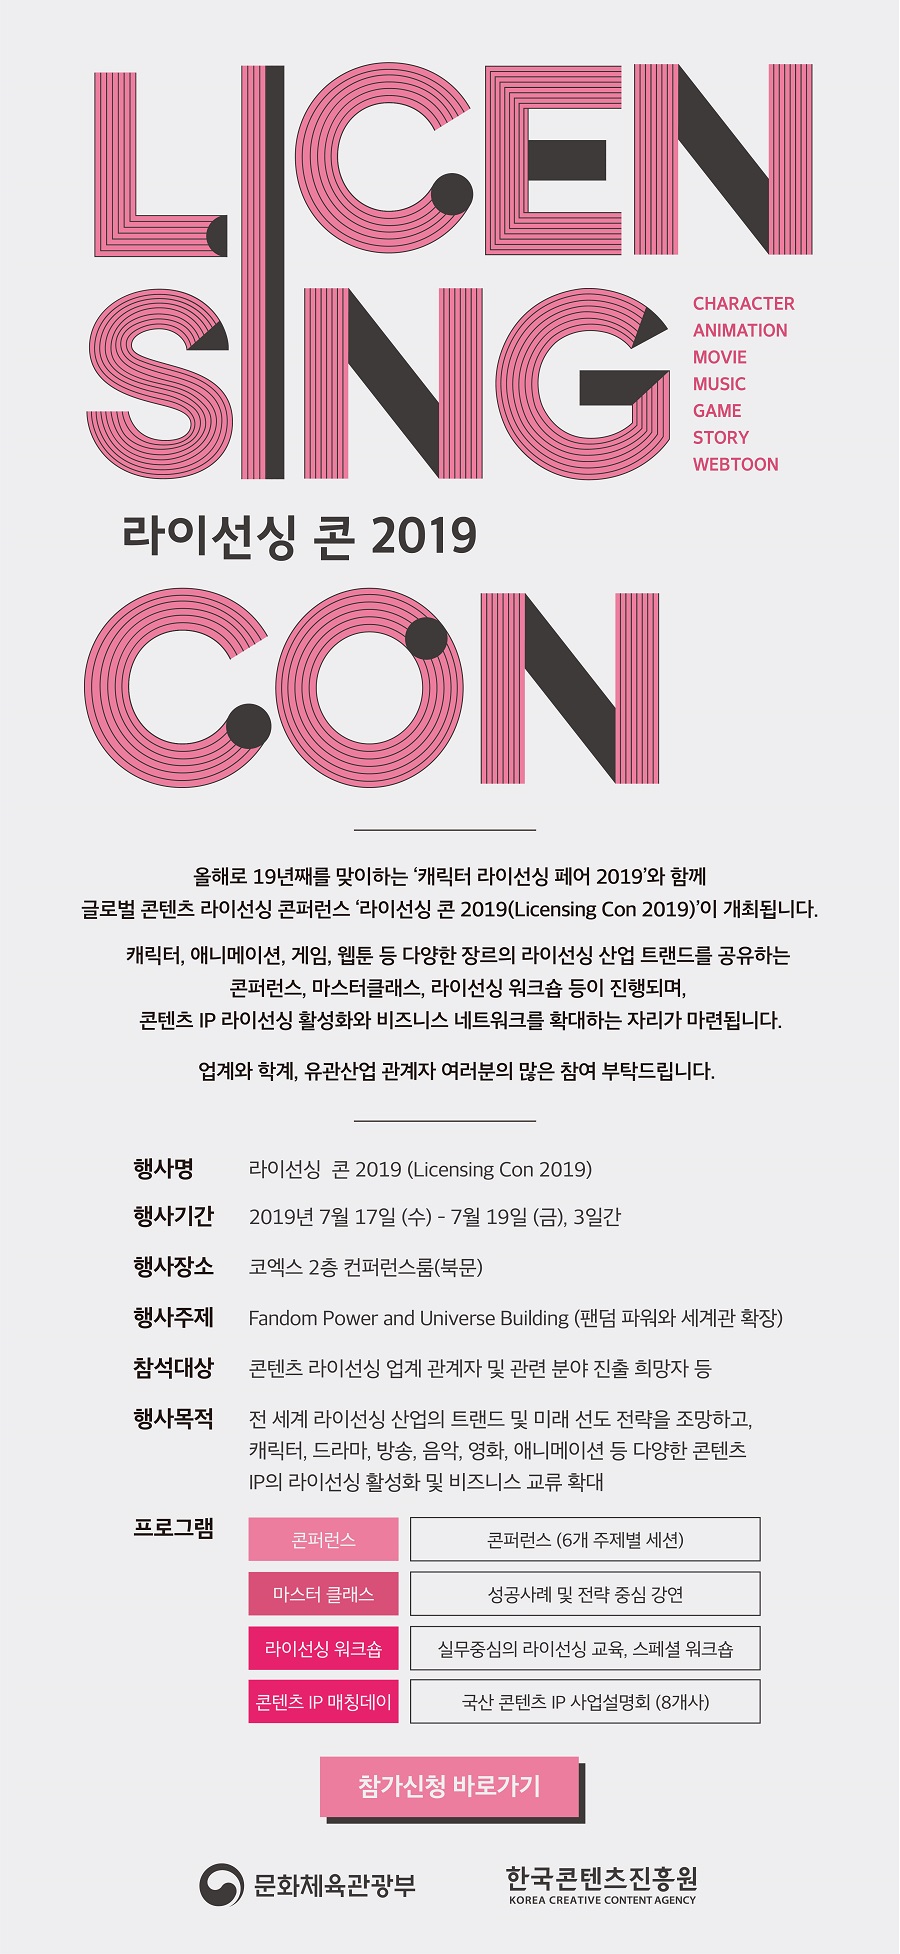 라이선싱 콘 2019(Licensing Con 2019) 참가신청 안내